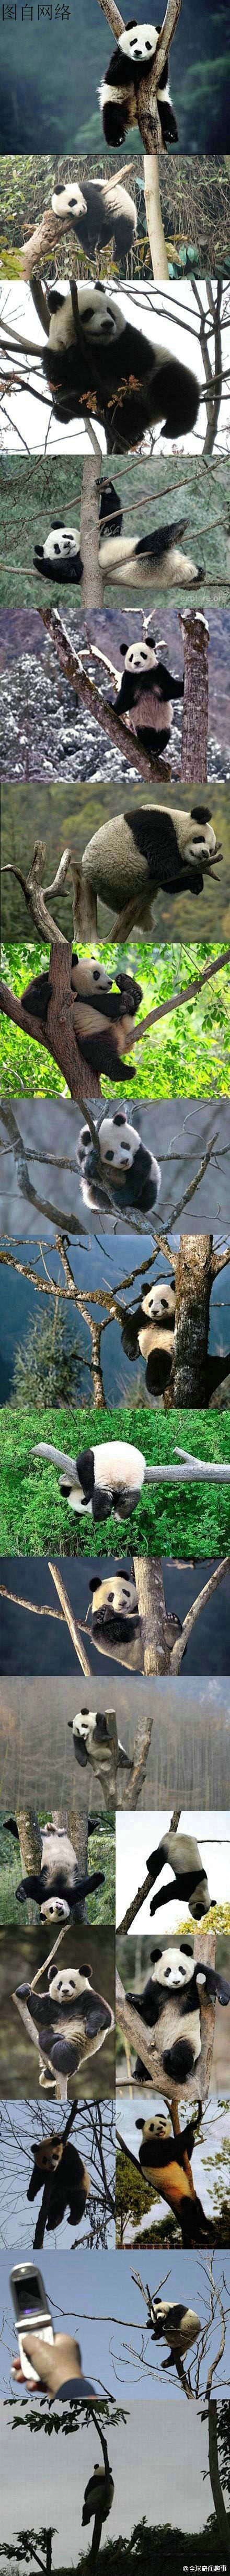 当熊猫遇到树。。。真是各种惊天地泣鬼神的...